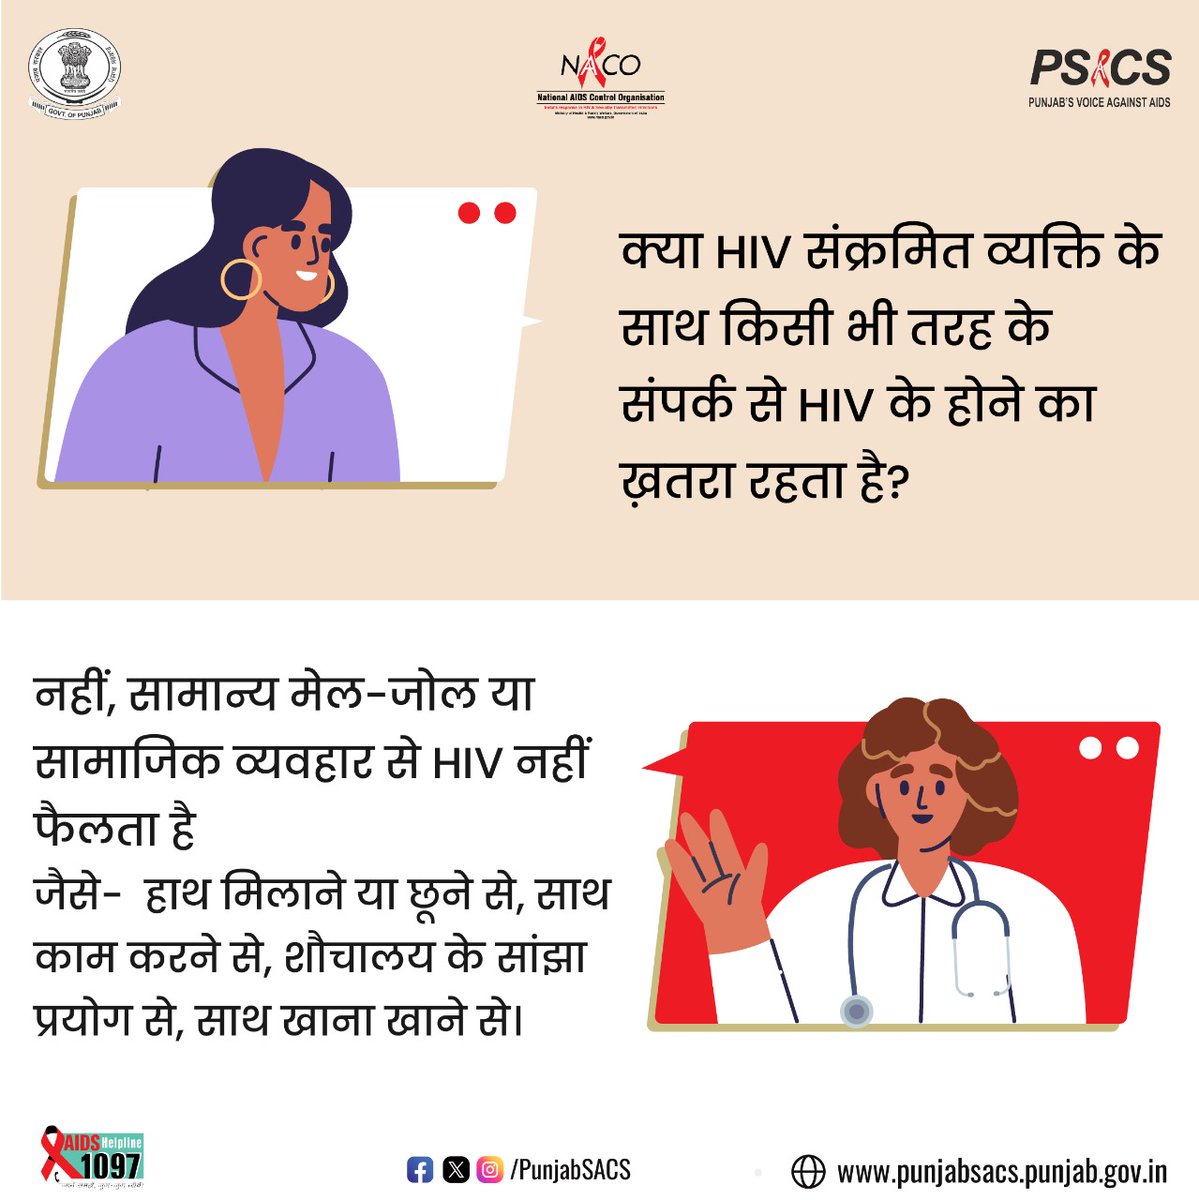 नहीं, सामान्य मेल-जोल या सामाजिक व्यवहार से HIV नहीं फैलता है
जैसे-  हाथ मिलाने या छूने से, साथ काम करने से, शौचालय के सांझा  प्रयोग से, साथ खाना खाने से।

#HIVTesting #GetTested #KnowYourHIVStatus #Dial1097 #KnowAIDS #HIVTestingisImportant #KnowHIV #HIVFreeIndia